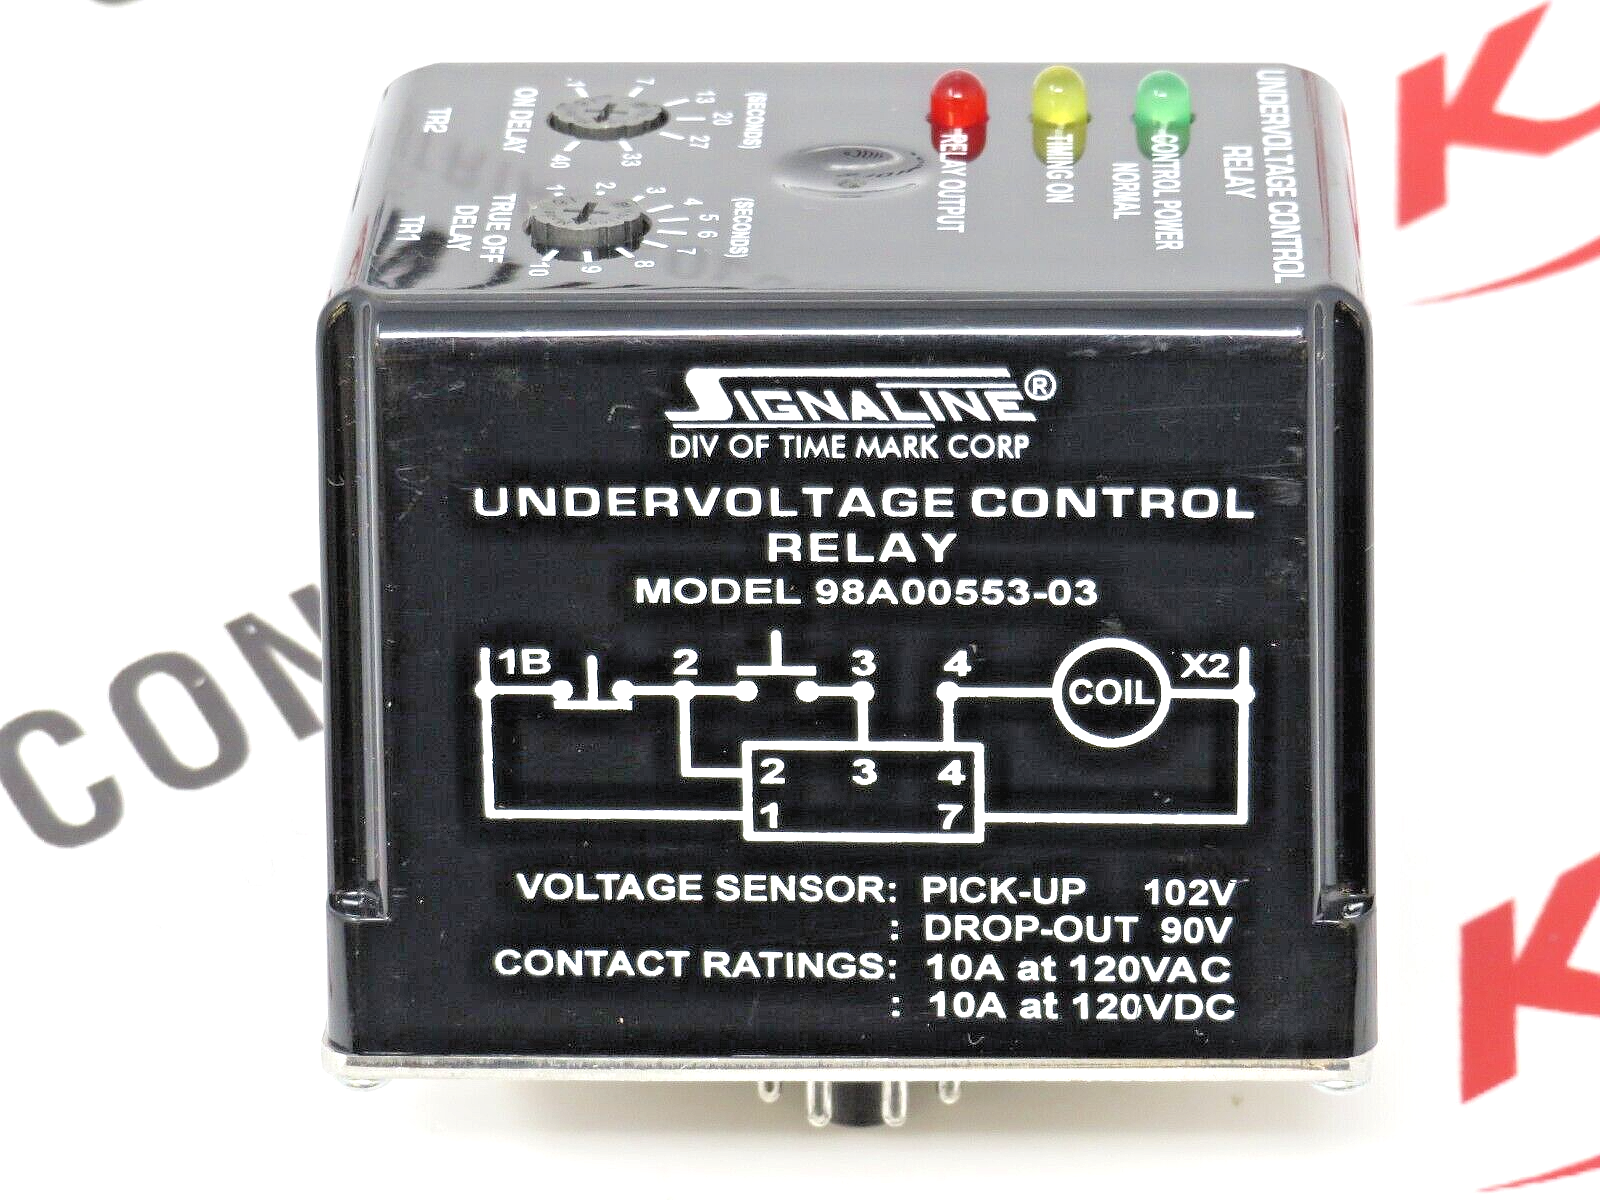 SignaLine 98A00553-03 Undervoltage Control Relay